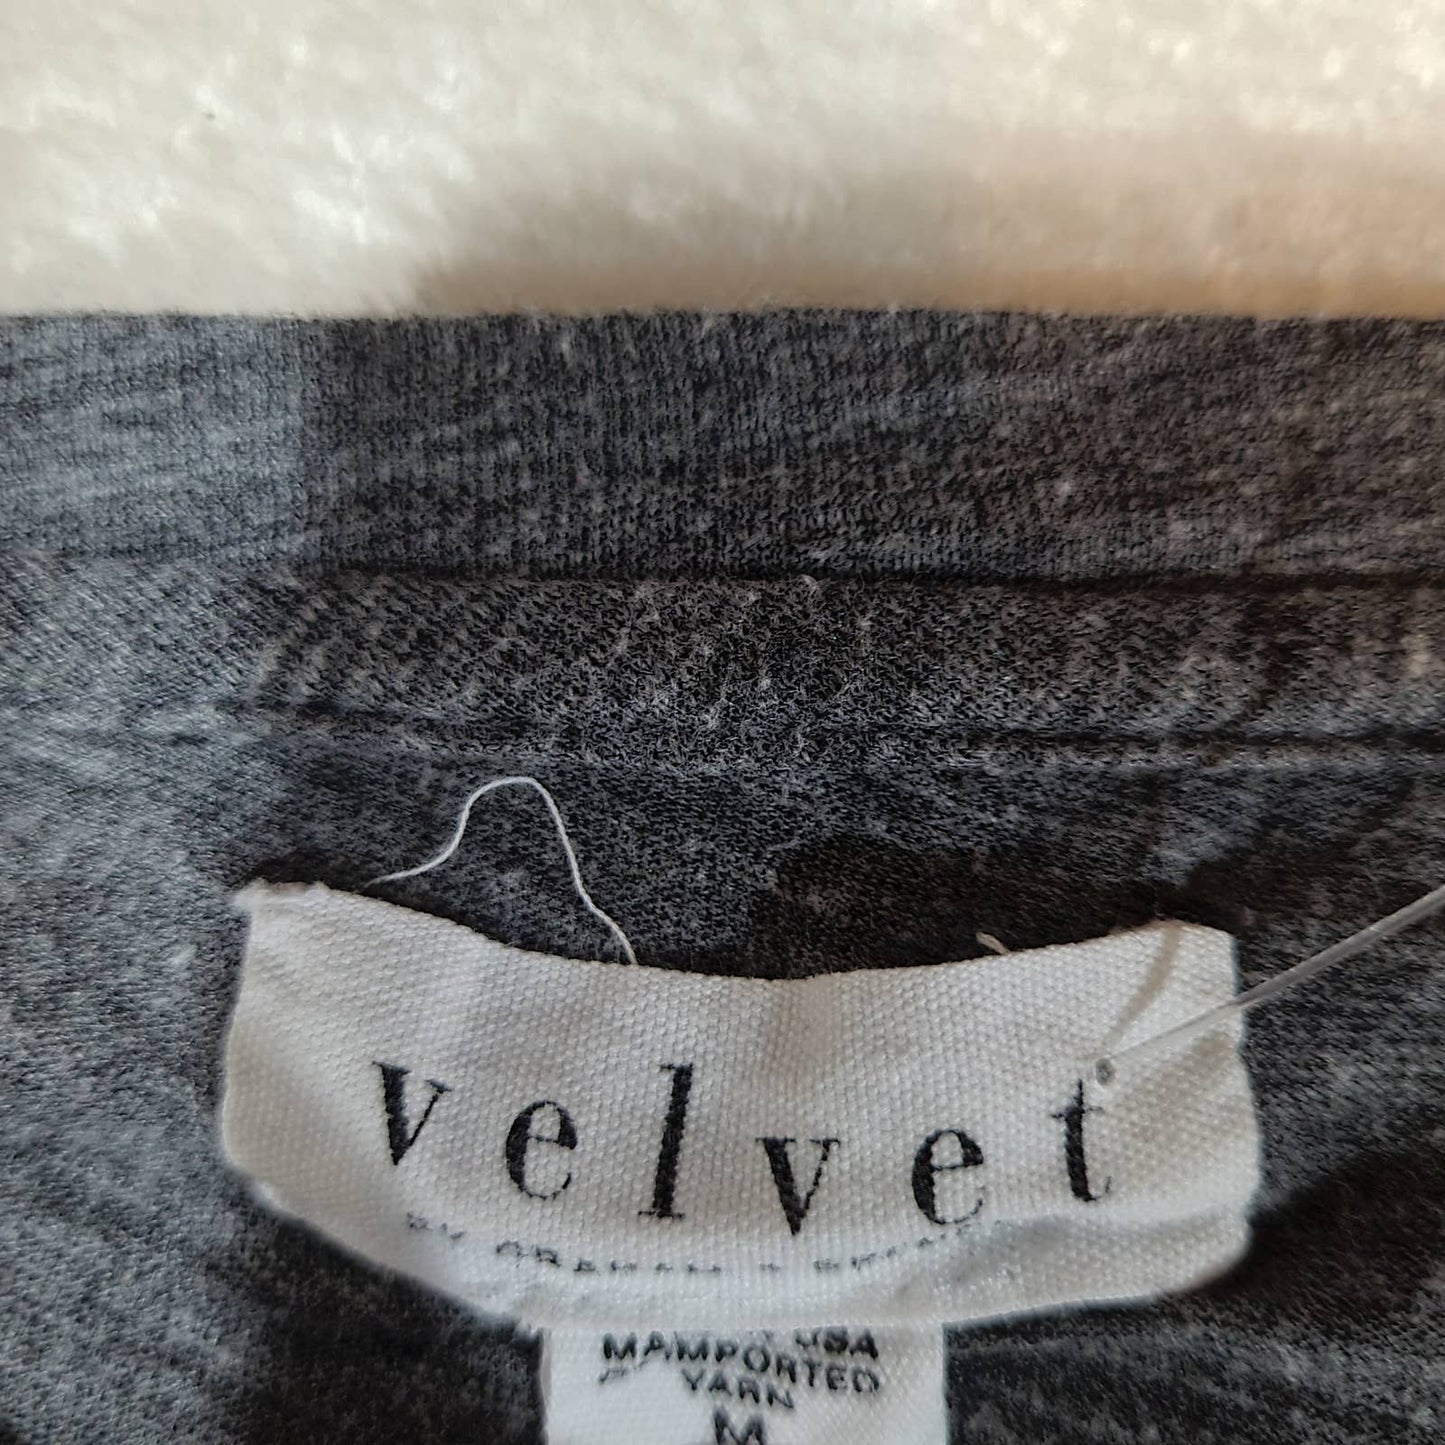 Velvet by Graham & Spencer Gray Long Sleeve Sweater - MediumMarkita's ClosetVelvet by Graham & Spencer